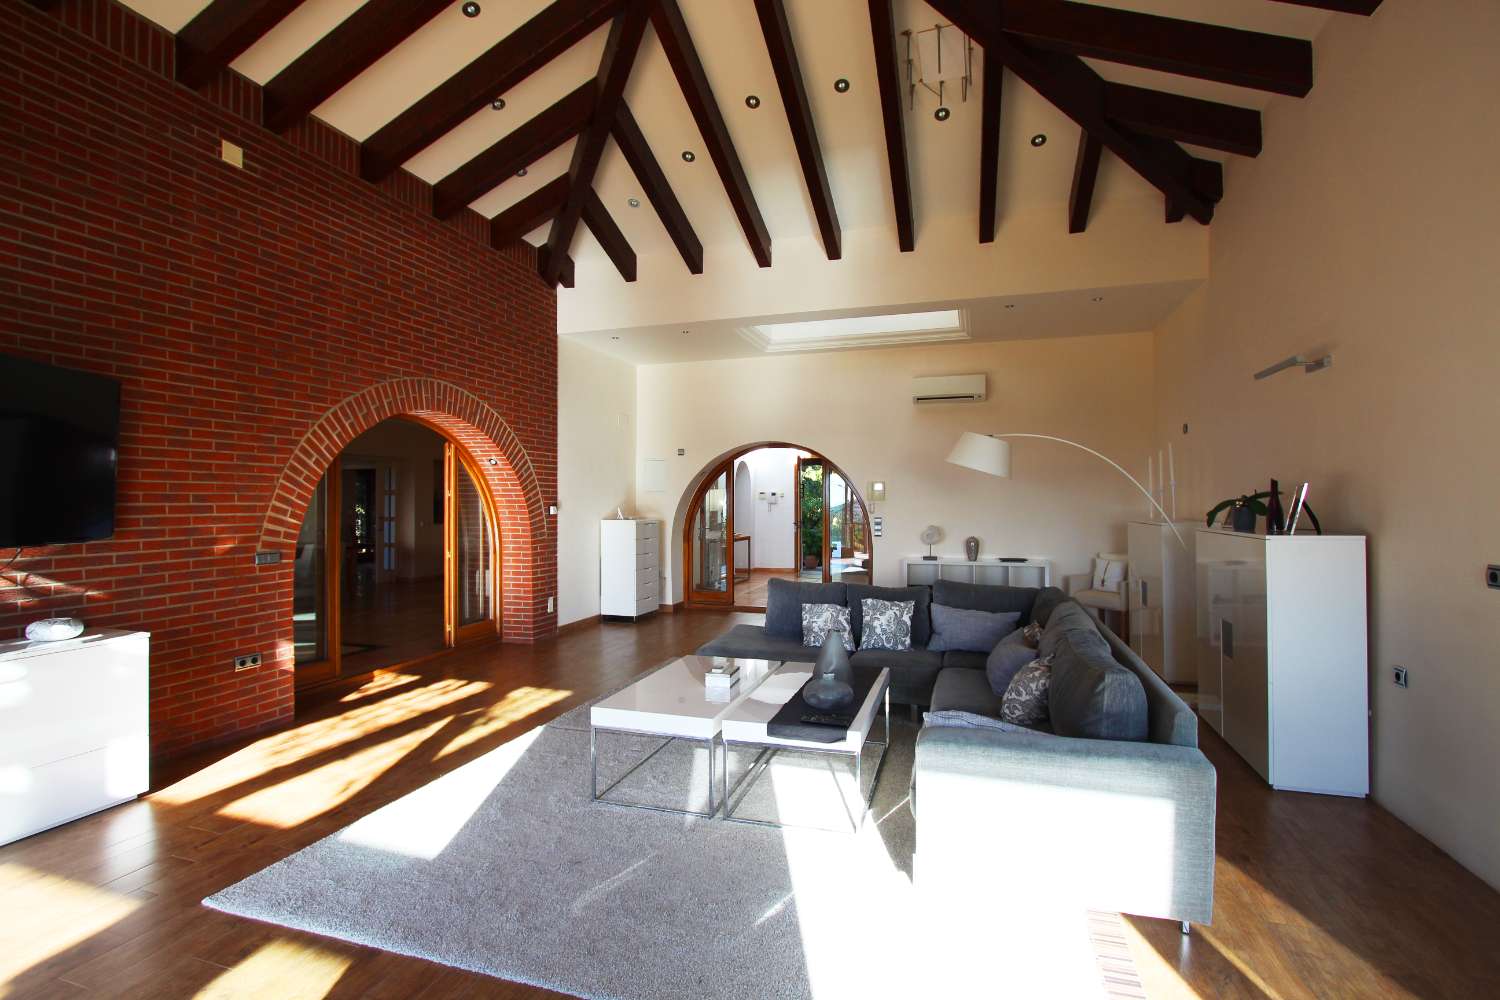 In vendita, villa con 6 camere da letto a Sierra Blanca, Marbella.  Terreno 2.090 m².